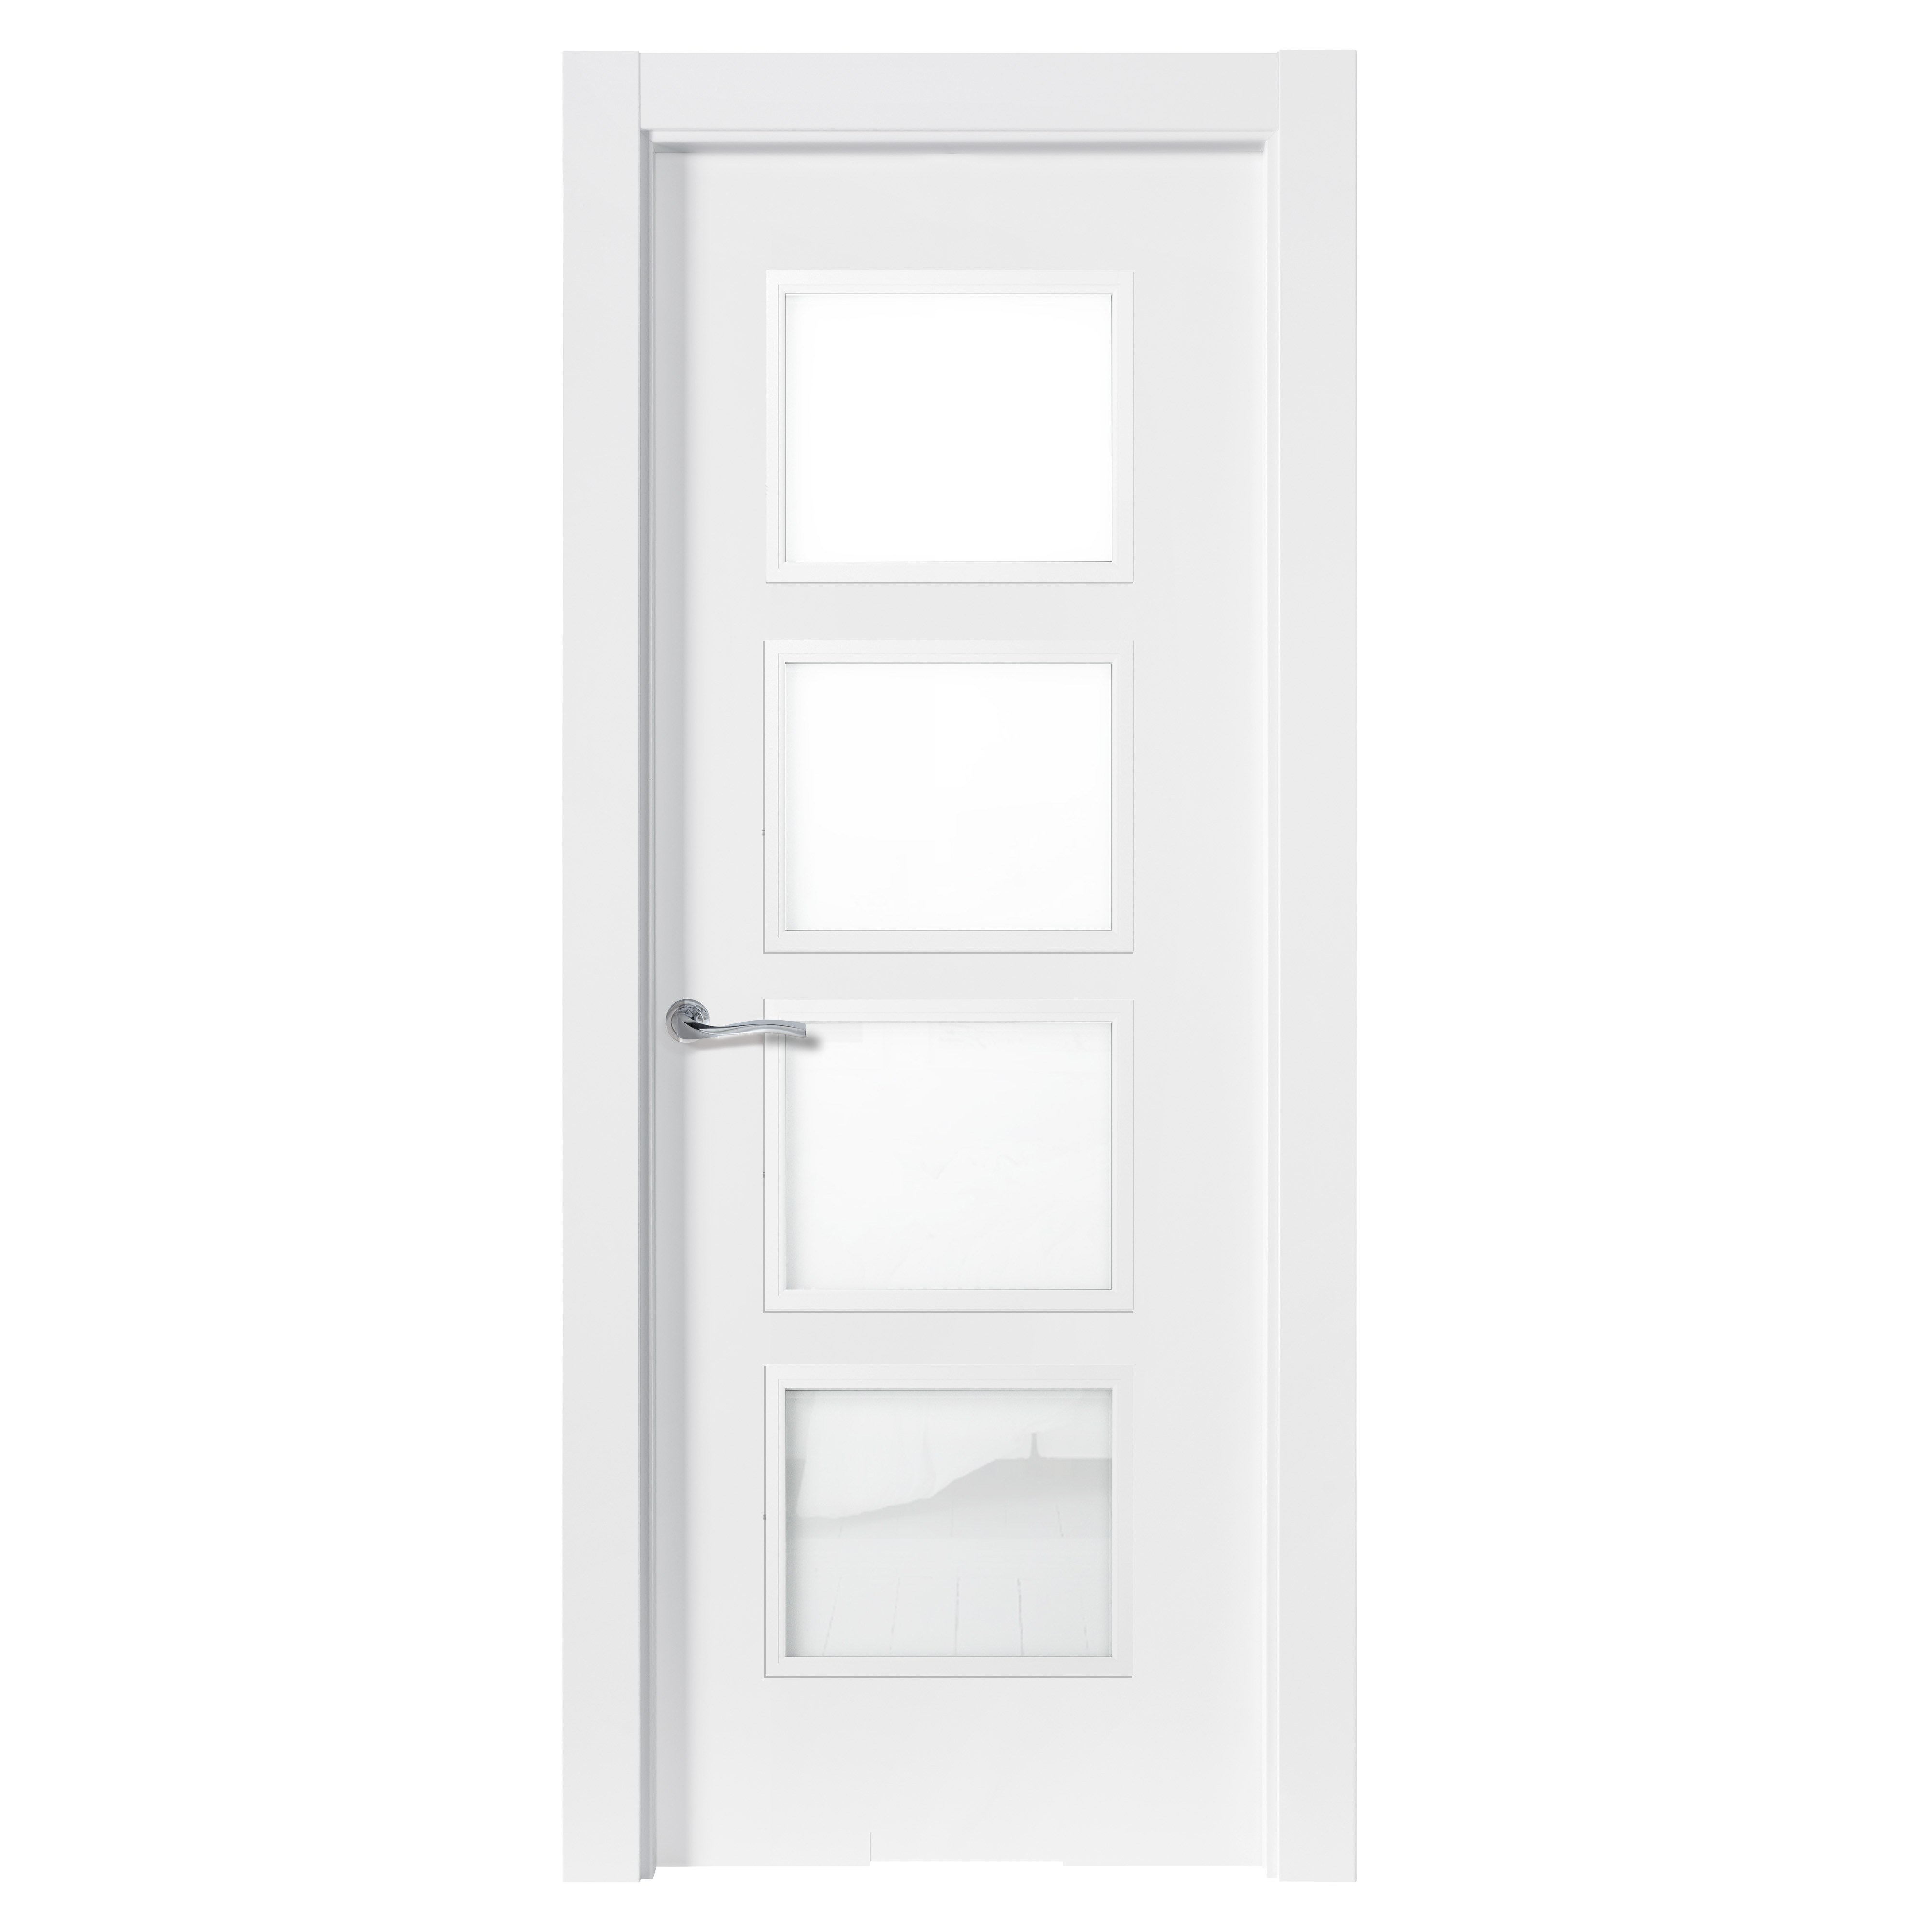 Puerta abatible bari blanca premium apertura izquierda de 9x82.5 cm